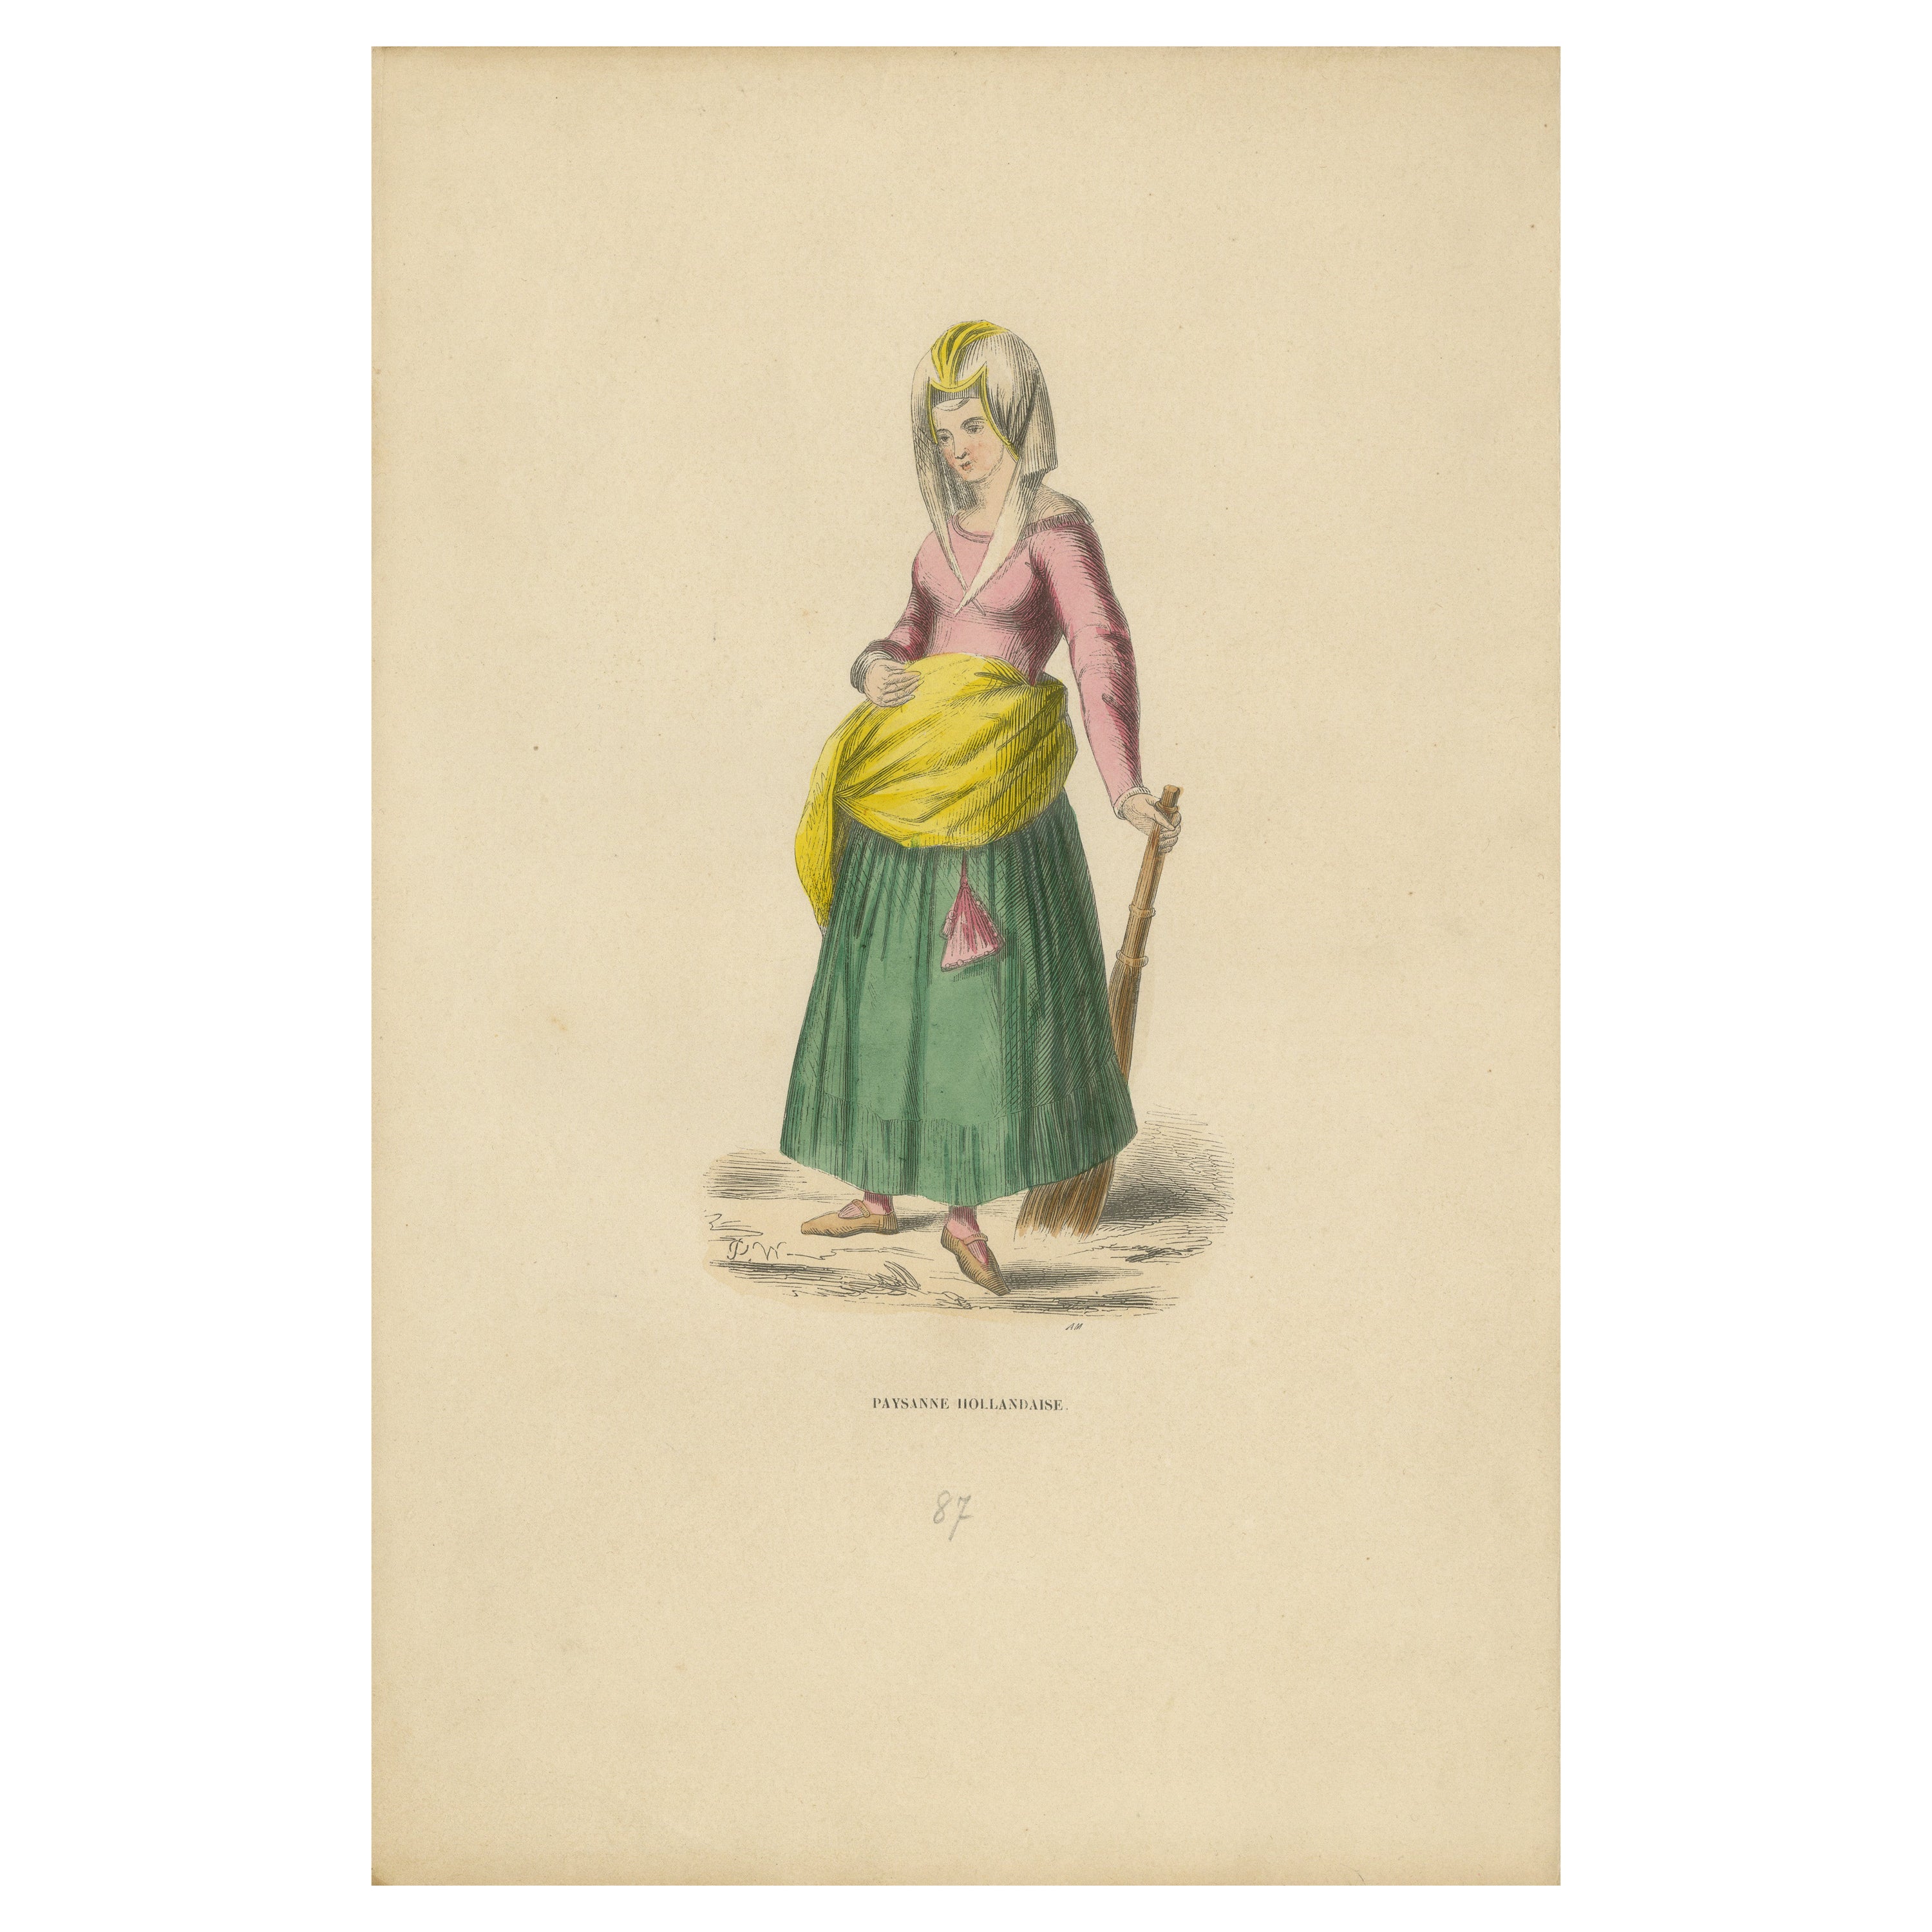 Femme paysanne du Moyen Âge : Portrait de la vie rurale hollandaise, 1847